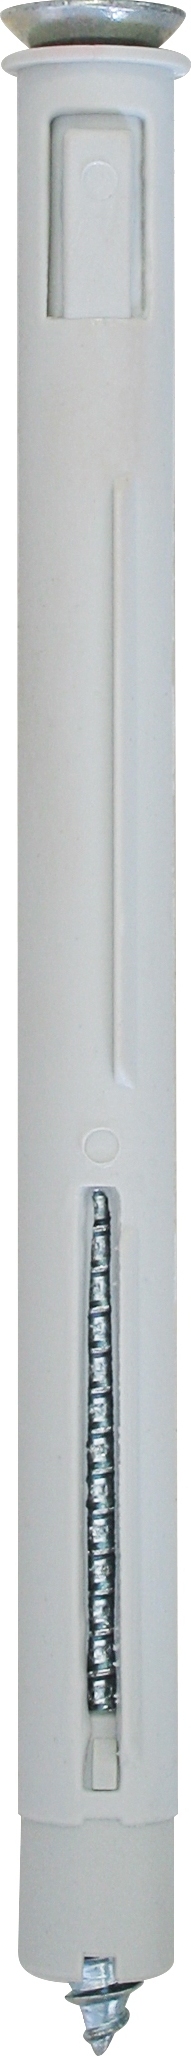 Cod. 60602B1016500 - TPF Tassello prolungato con vite TPS per serramenti